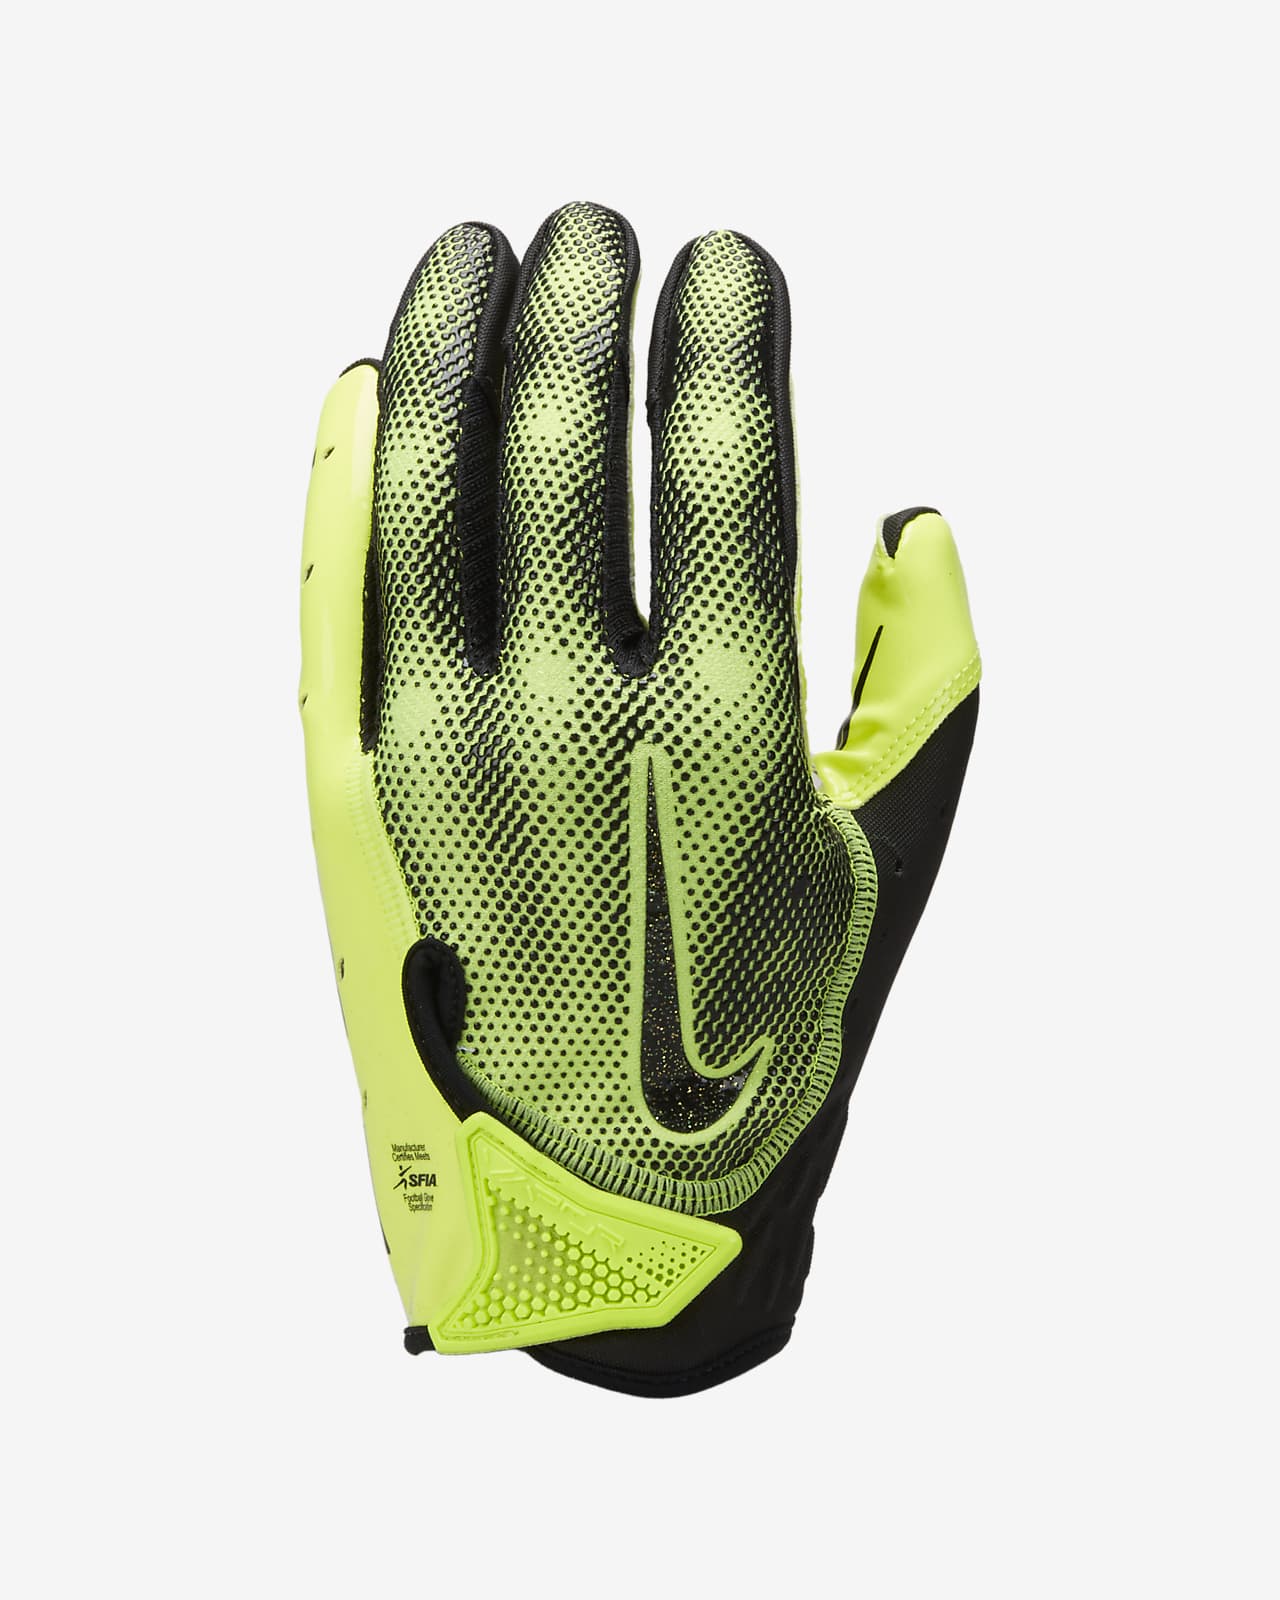 Nike Vapor Energy Football Gloves.